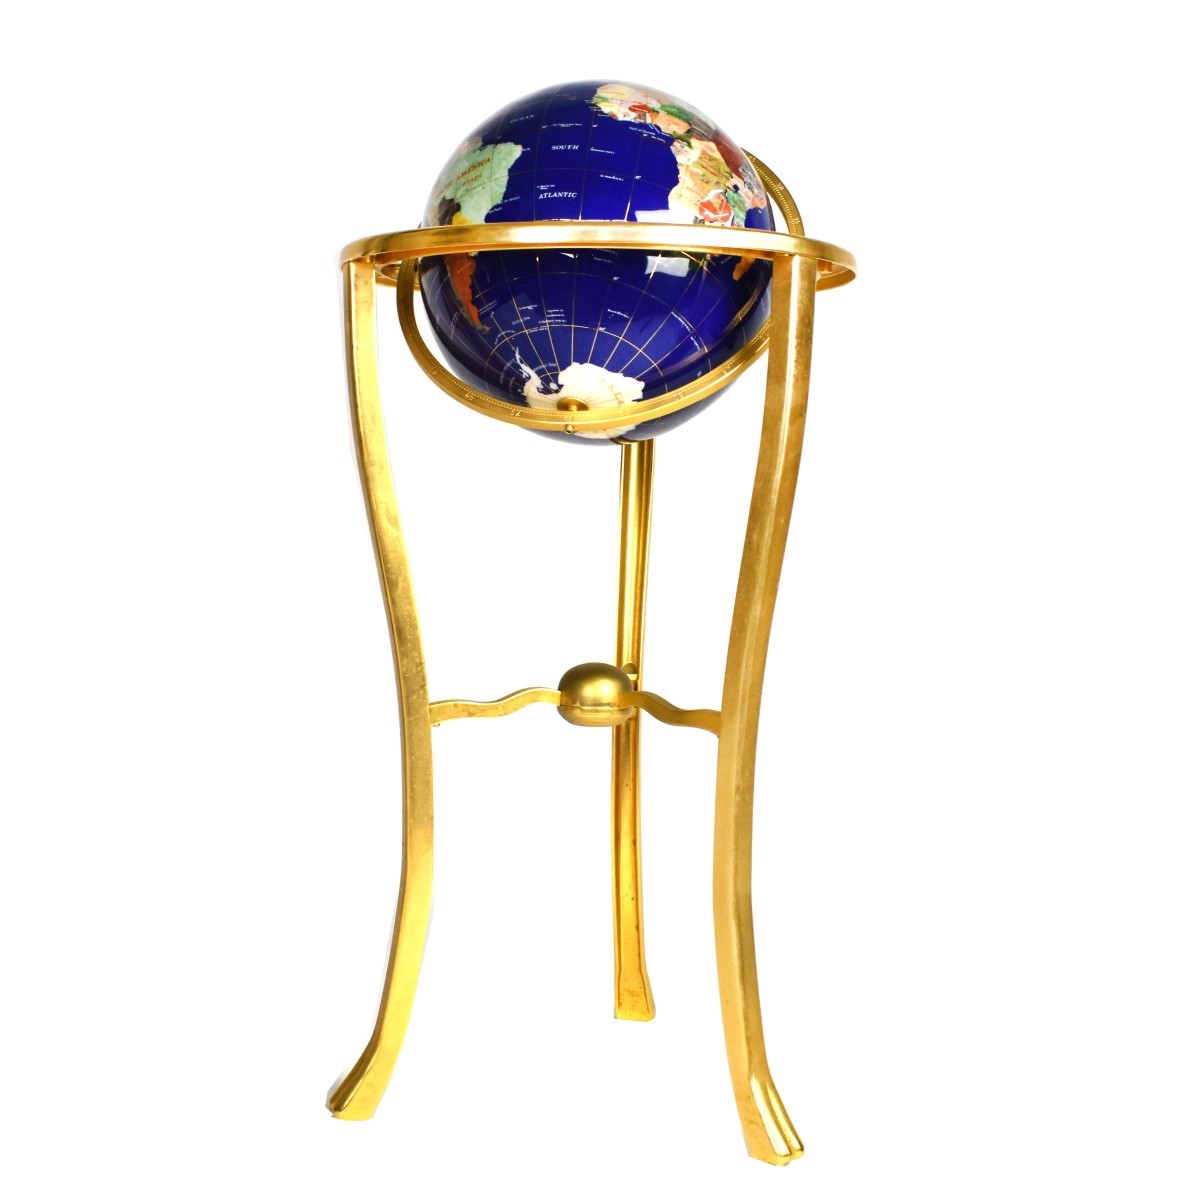 Large Gemstone Globe